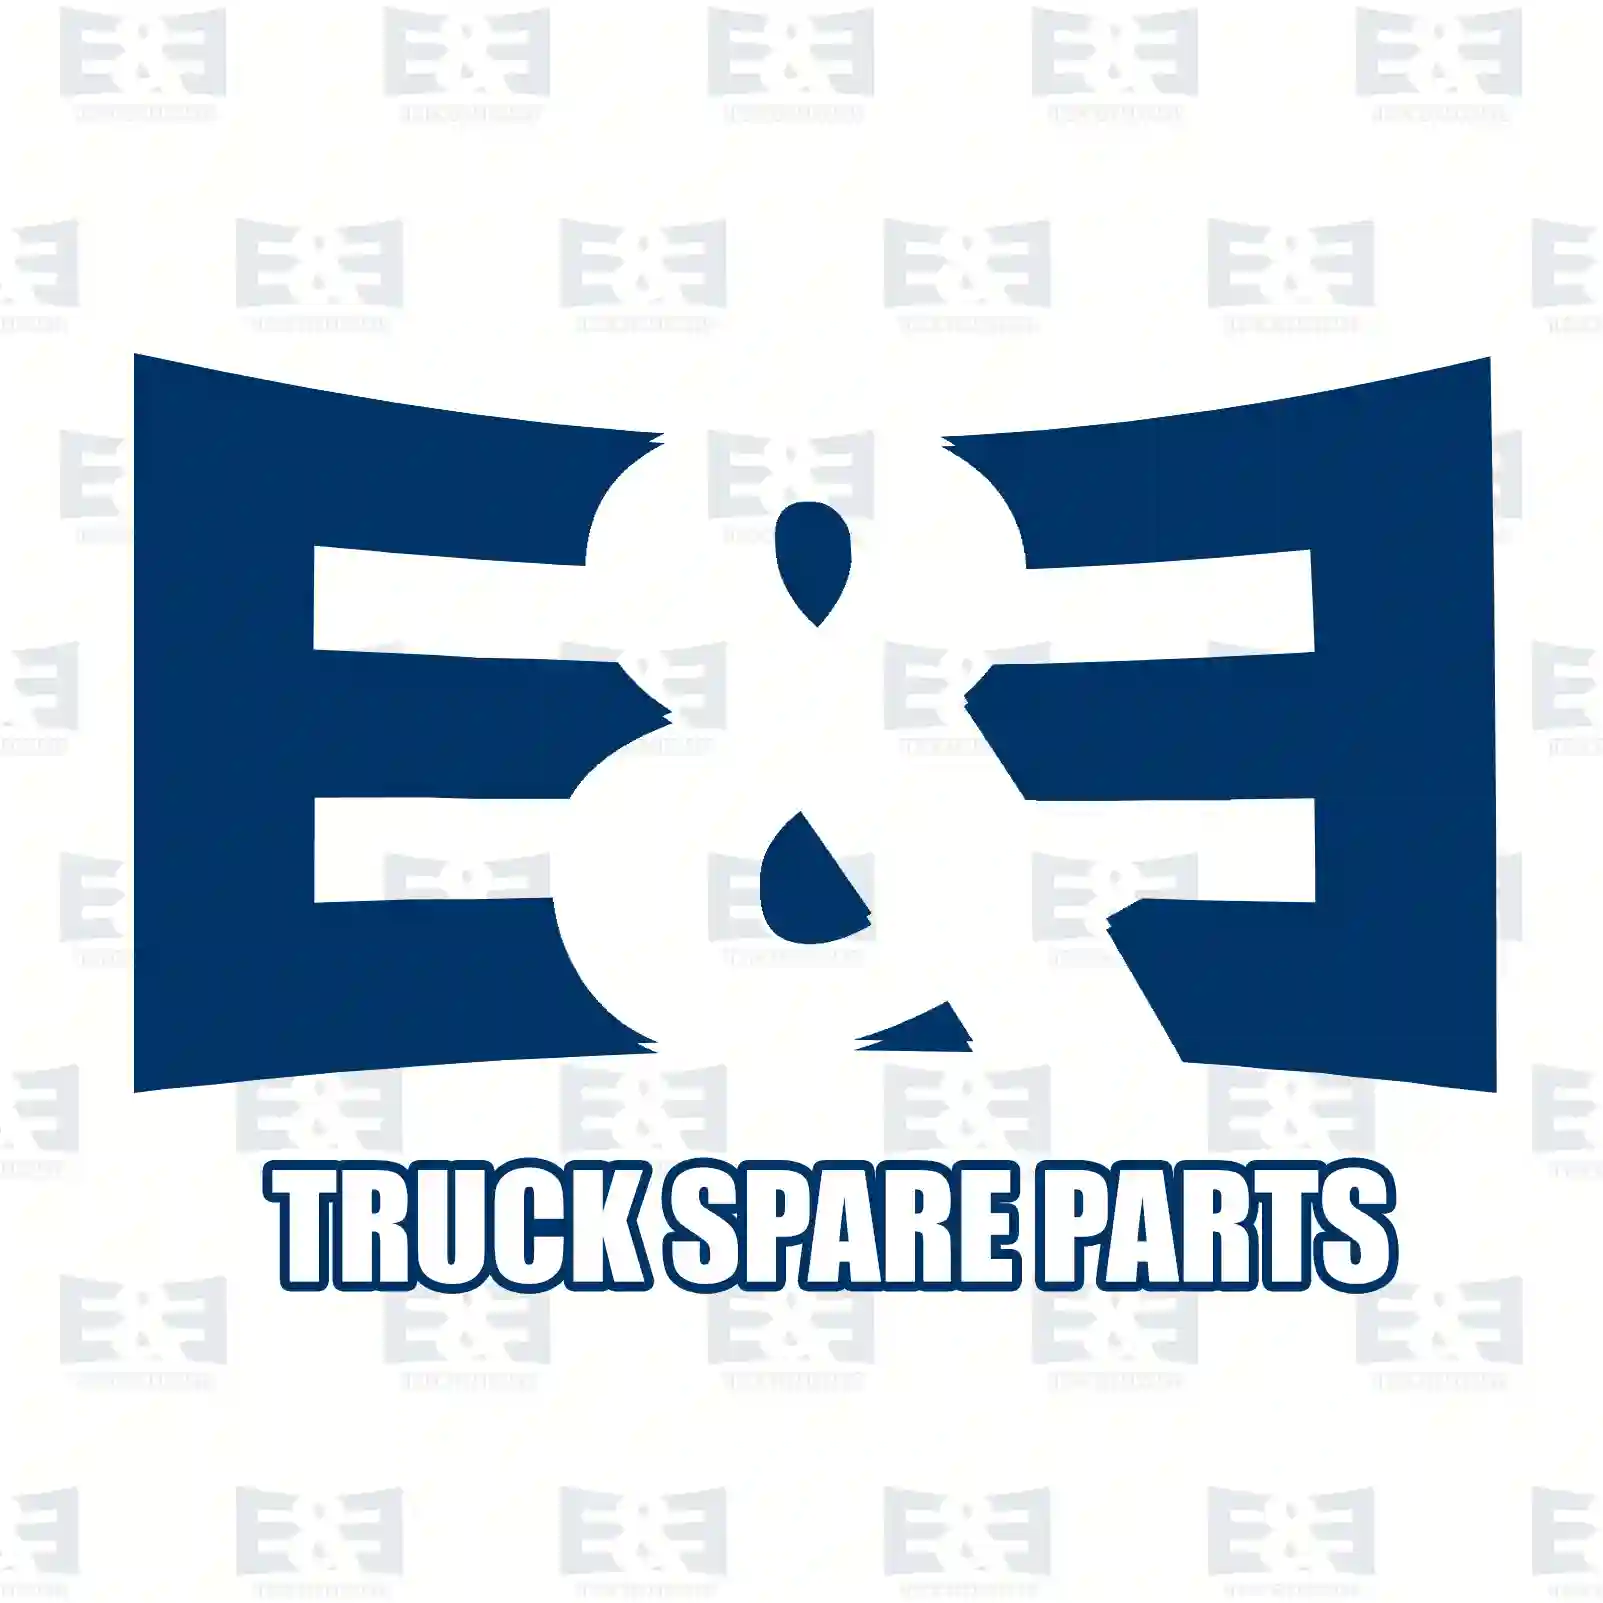 Wiper motor, 2E2289668, 1323405, ZG20201-0008 ||  2E2289668 E&E Truck Spare Parts | Truck Spare Parts, Auotomotive Spare Parts Wiper motor, 2E2289668, 1323405, ZG20201-0008 ||  2E2289668 E&E Truck Spare Parts | Truck Spare Parts, Auotomotive Spare Parts